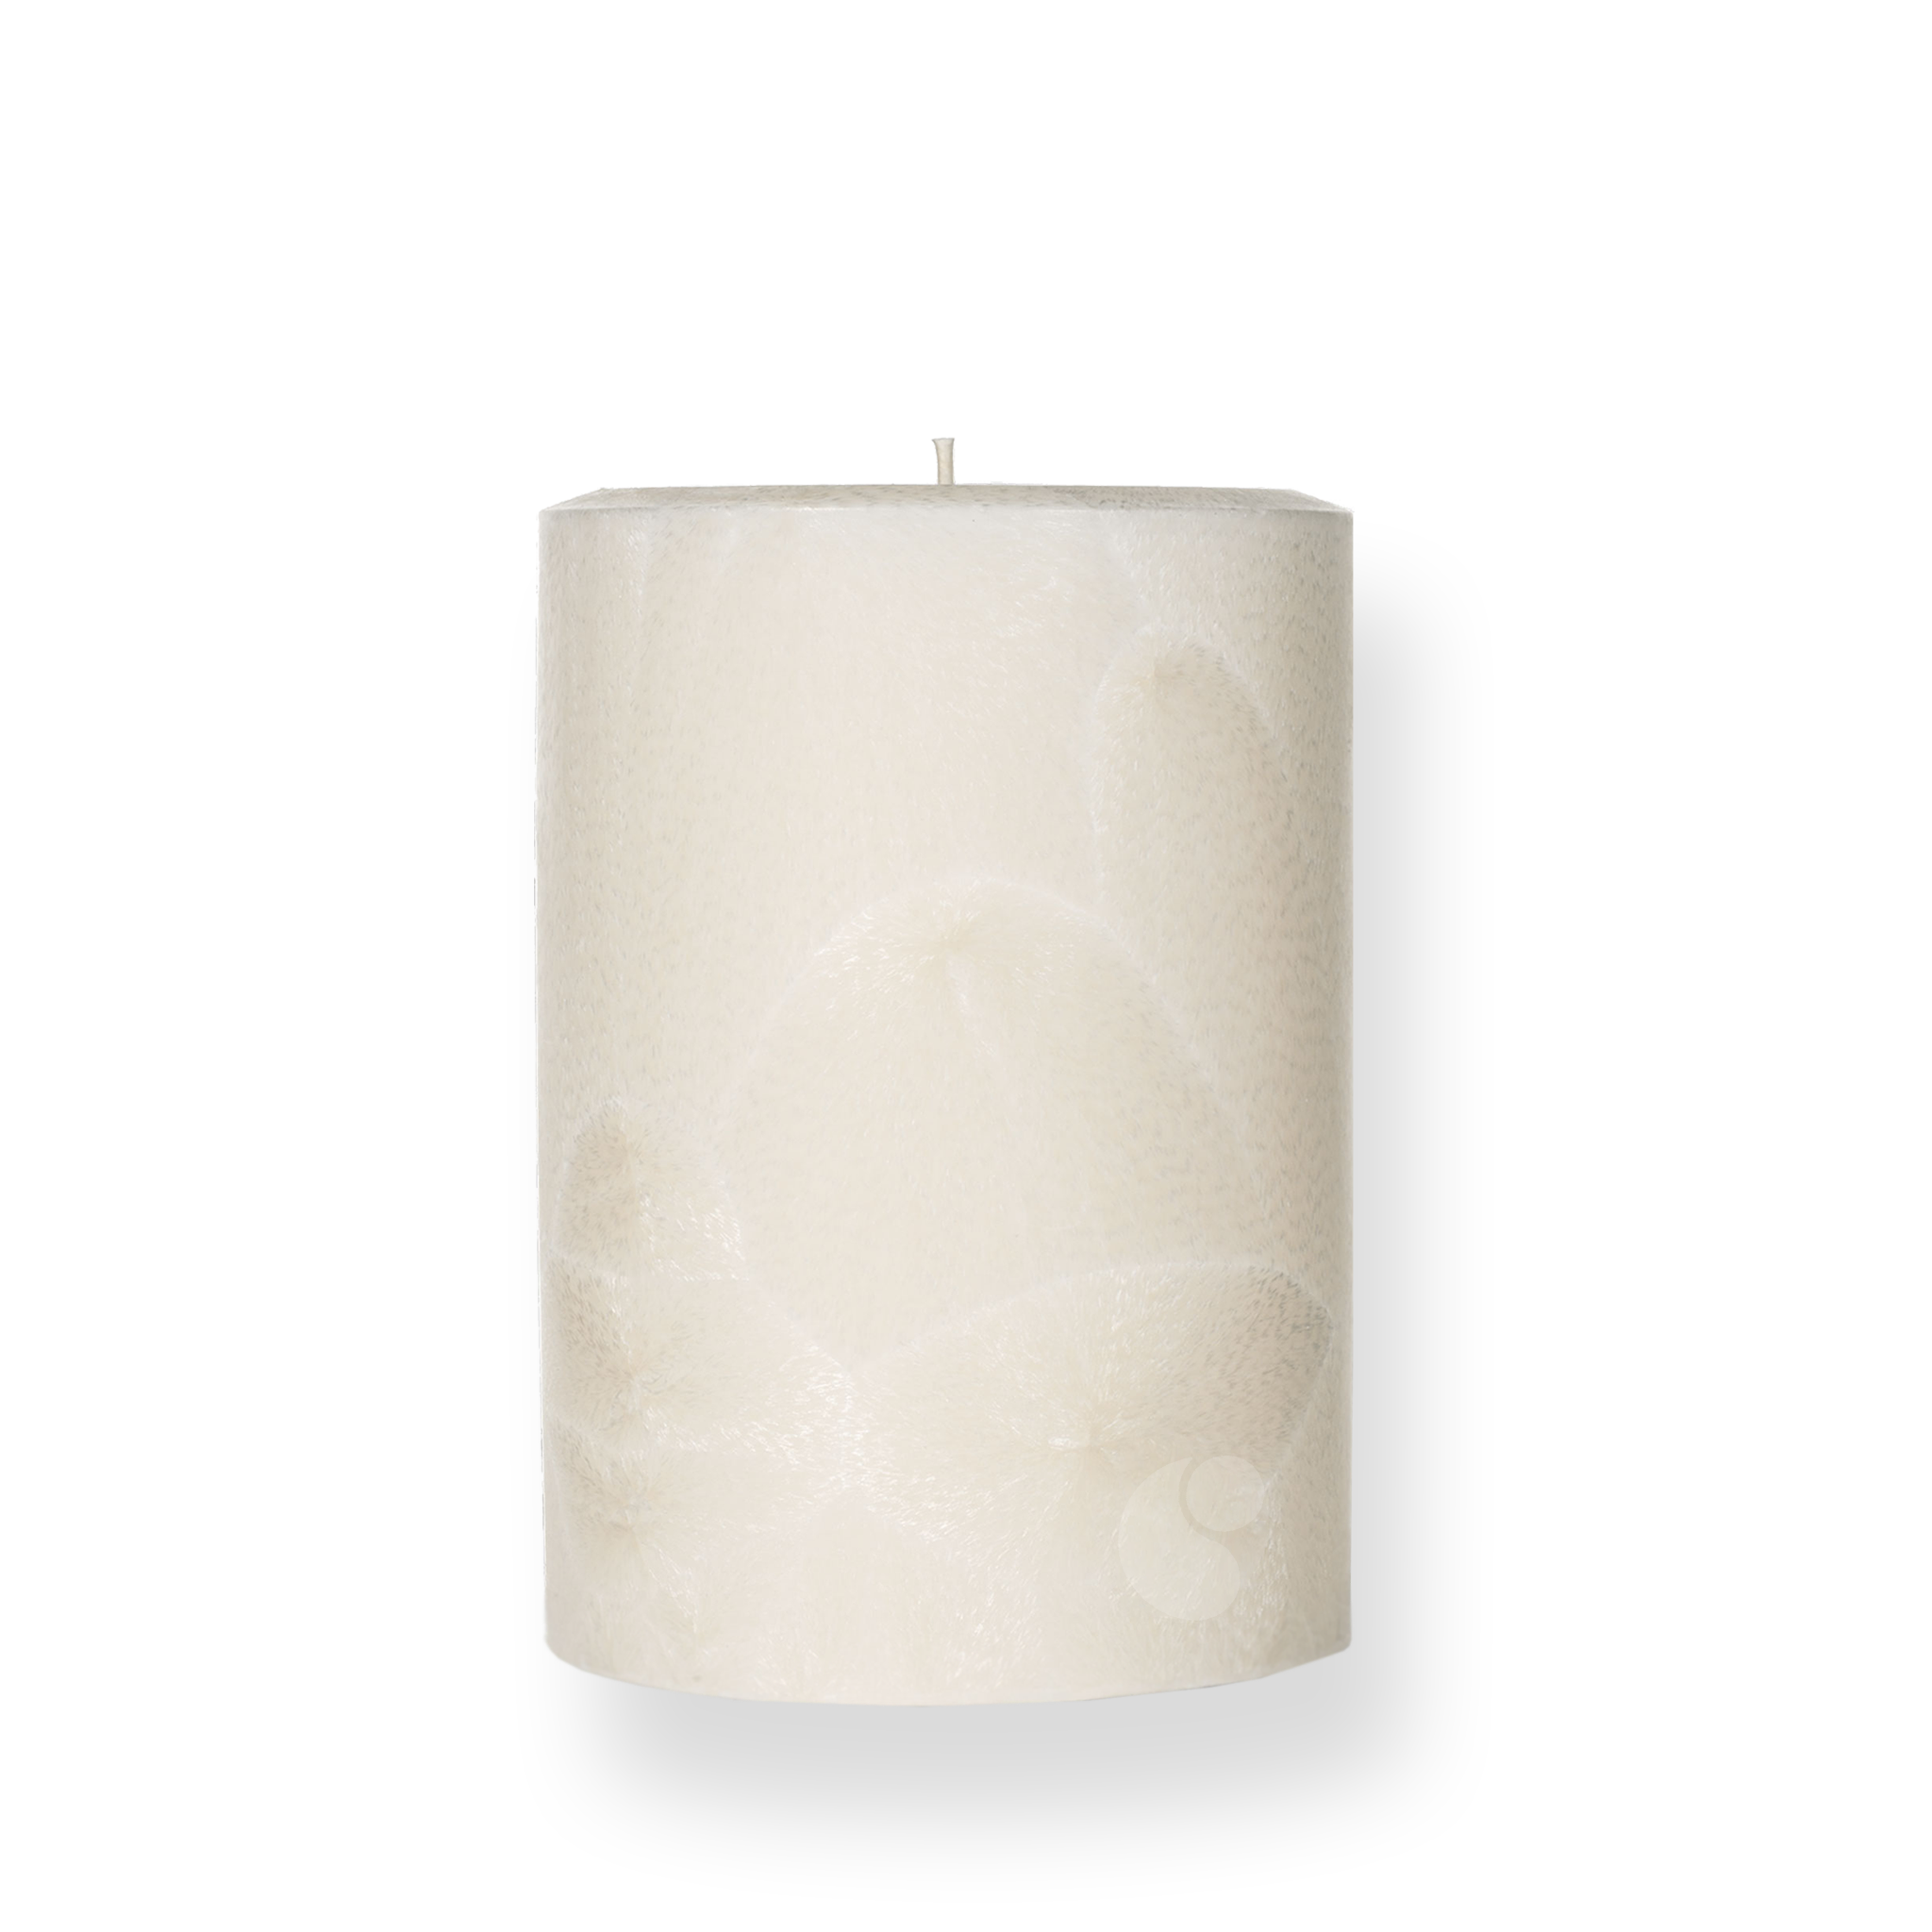 Merry Mistletoe · Pillar Candle